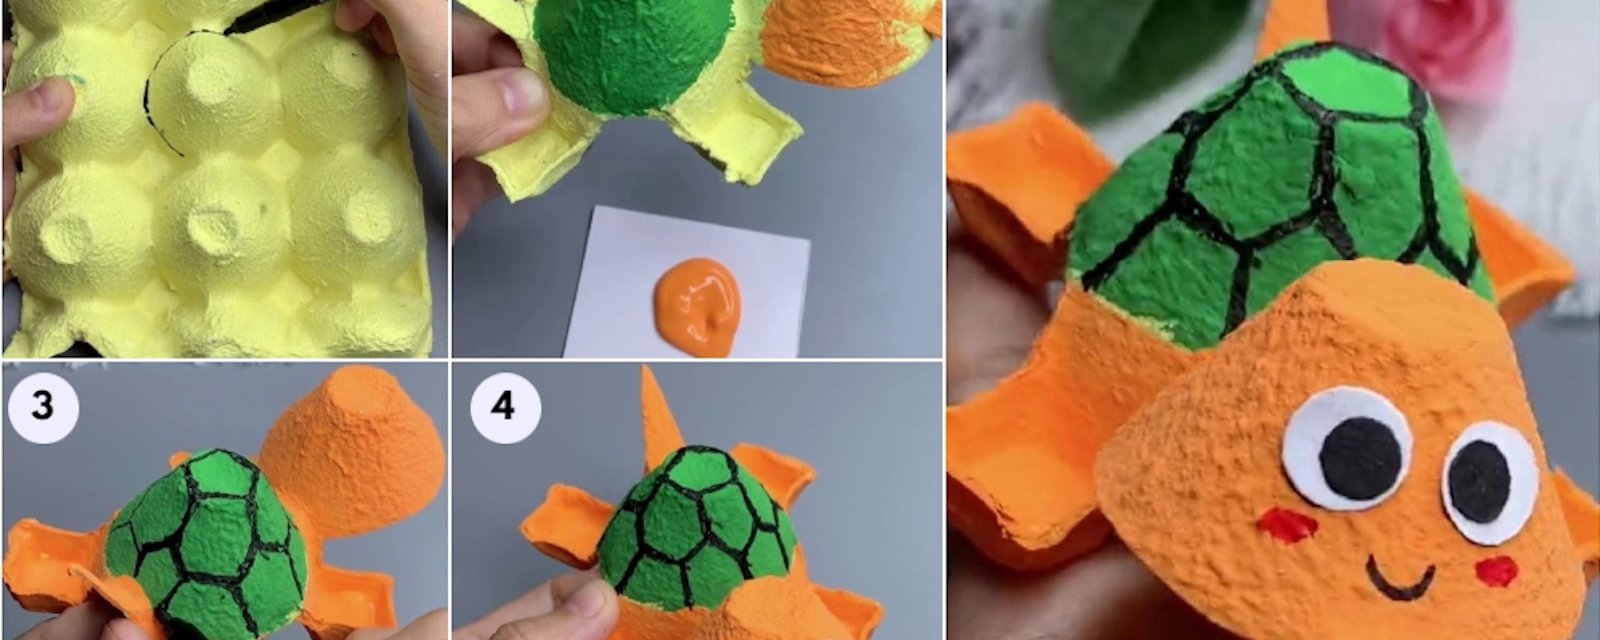 Comment réaliser une adorable tortue avec une boite d'oeufs